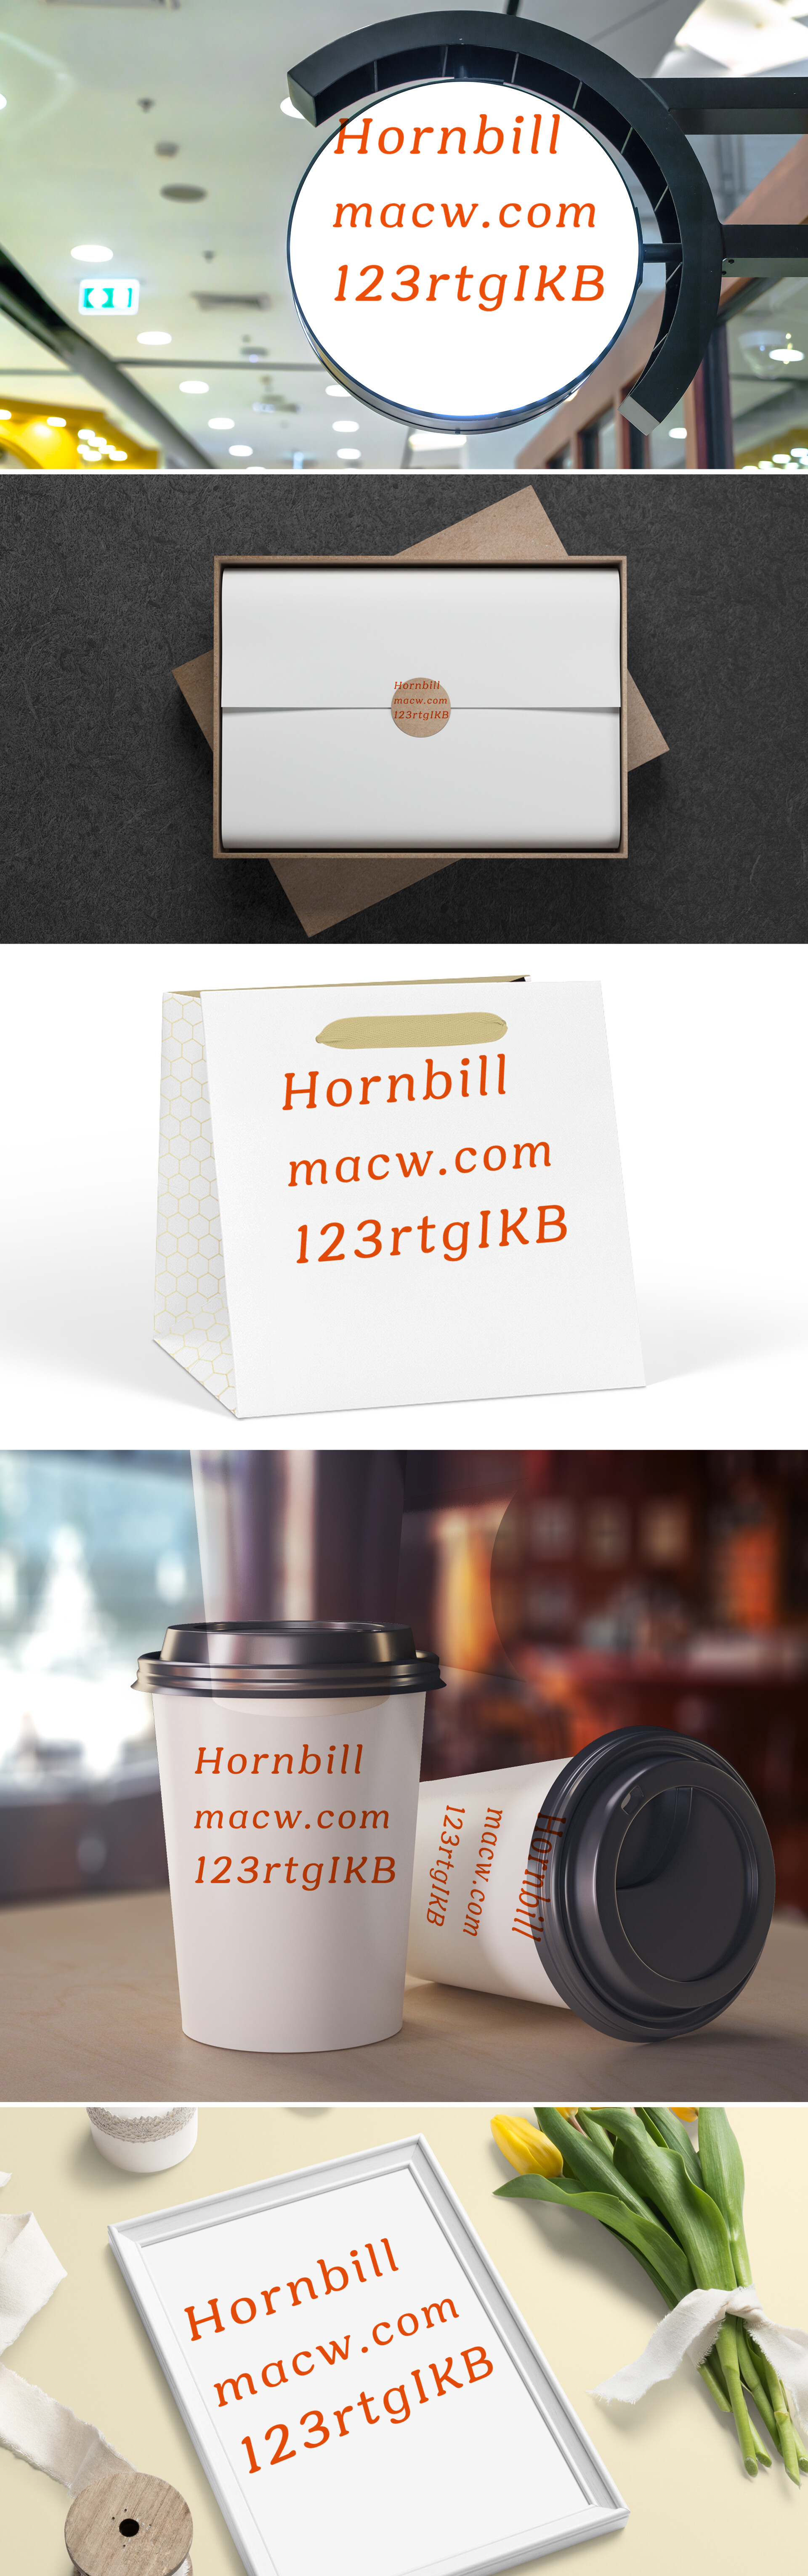 Hornbill衬线字体